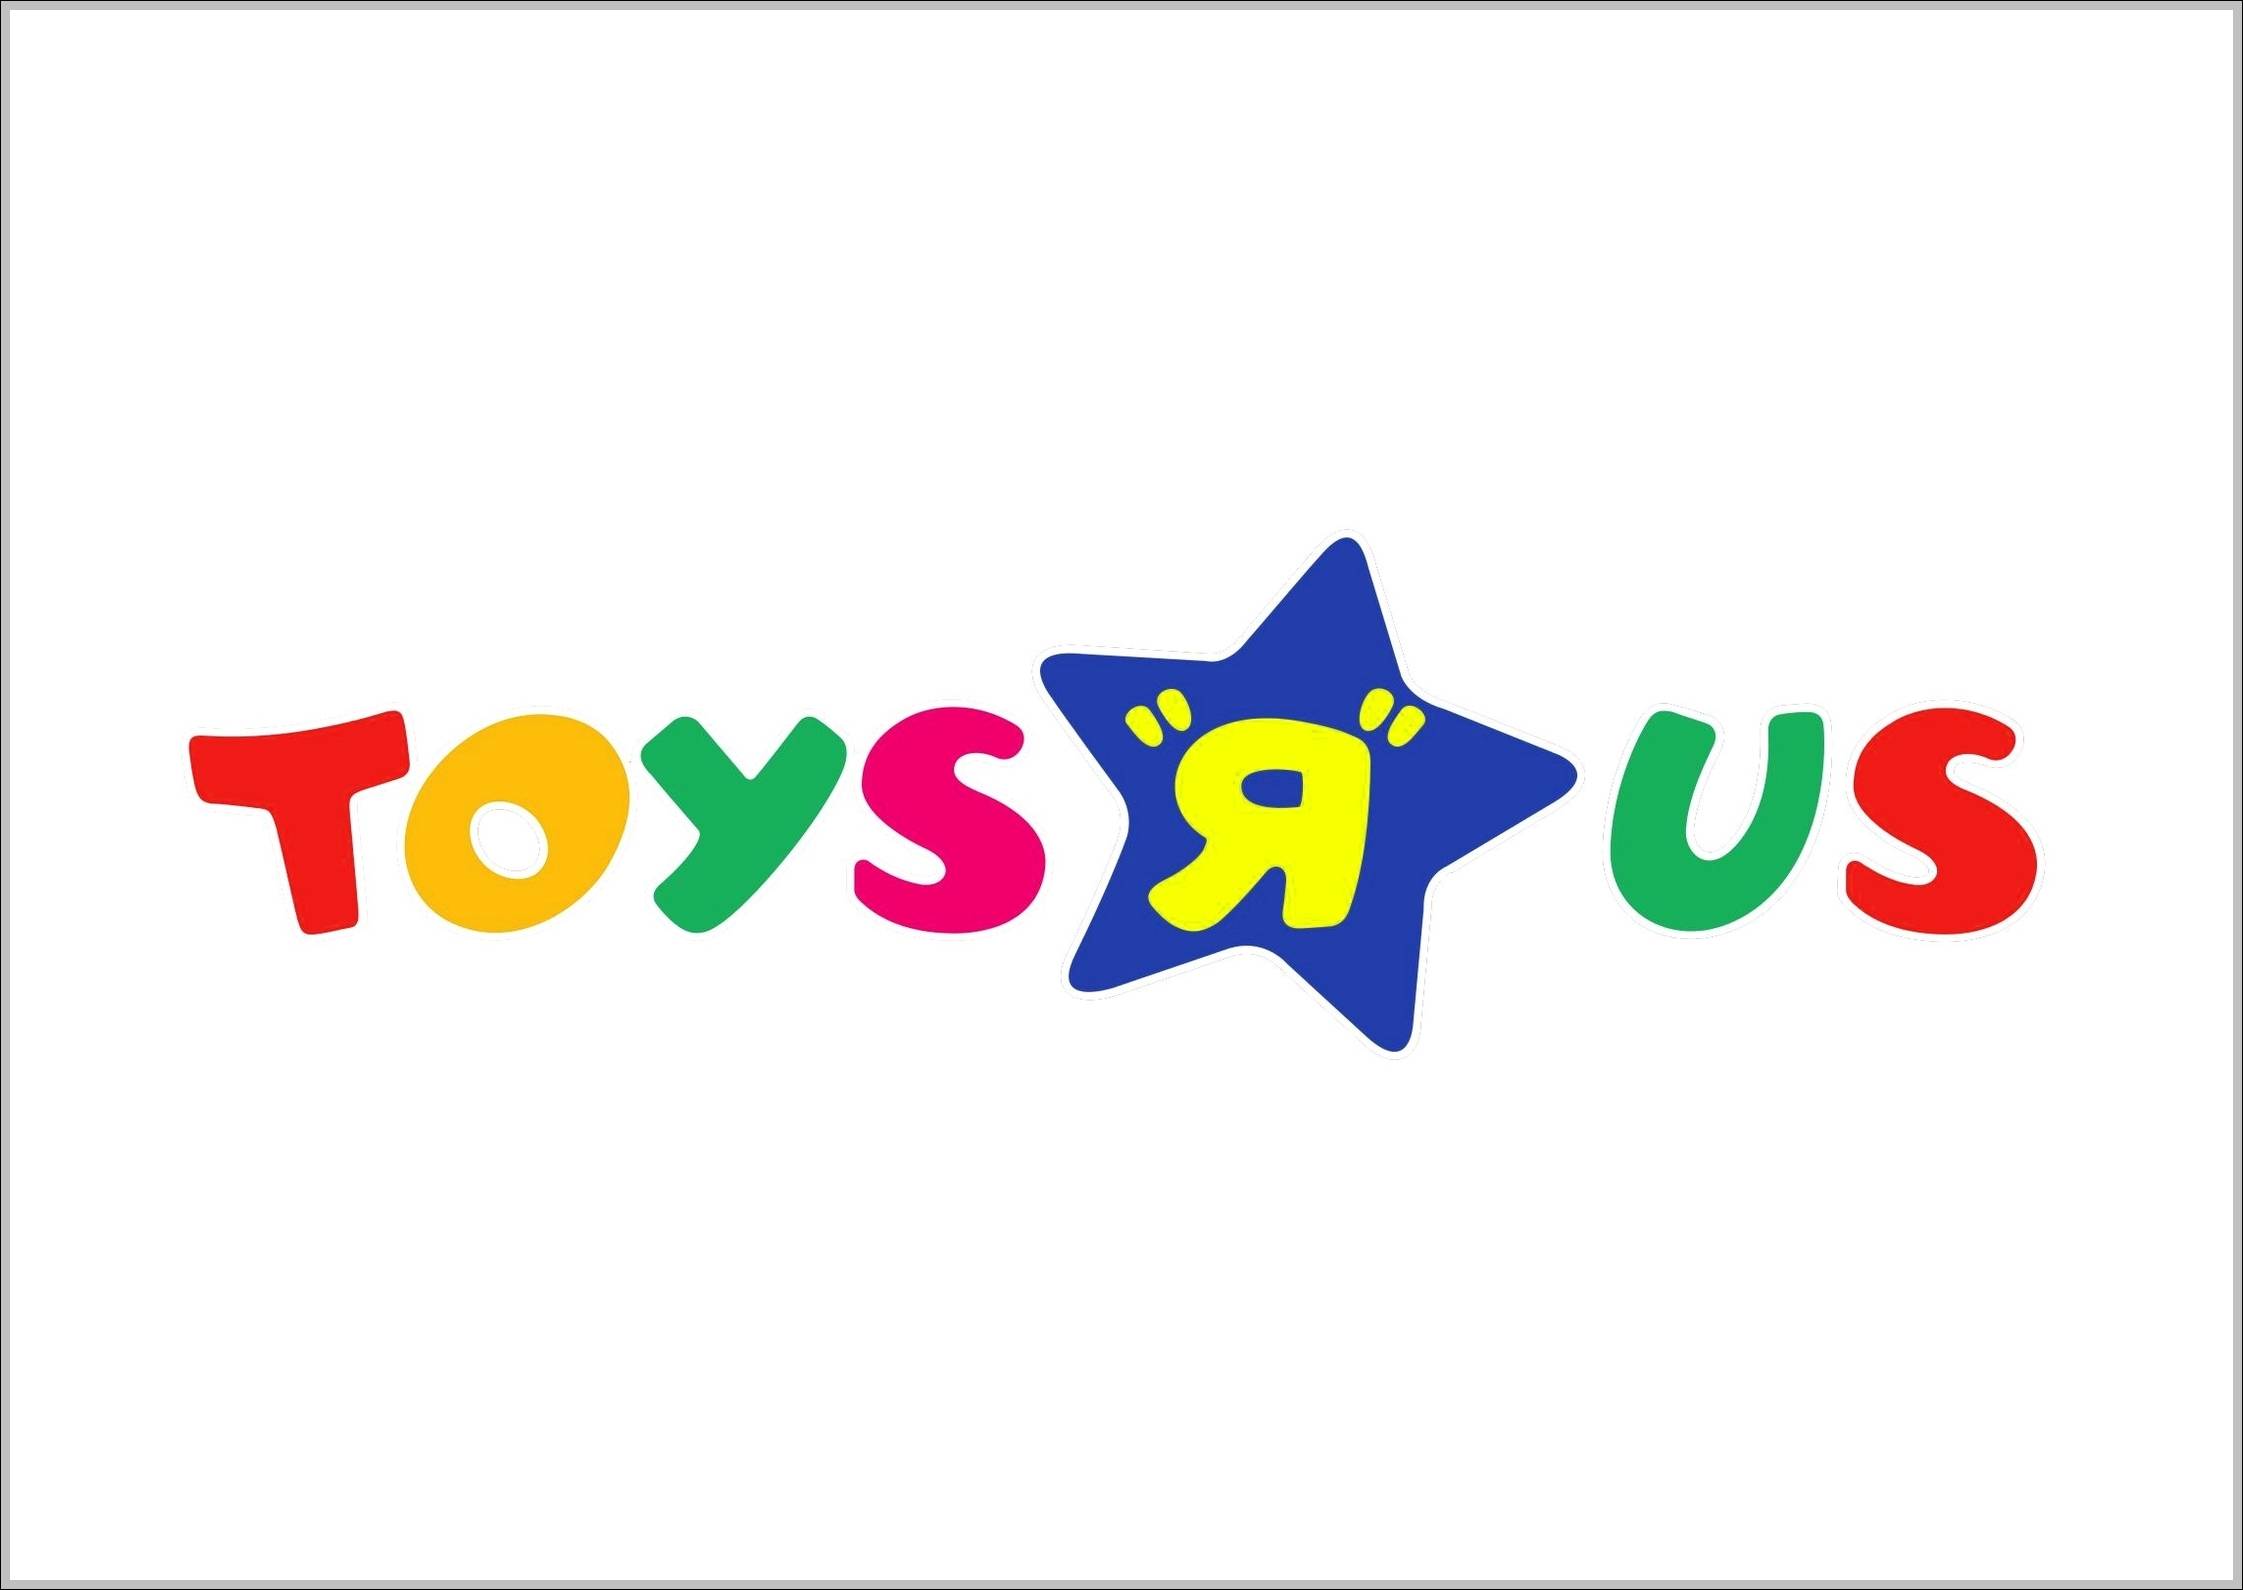 Toysrus logo previous